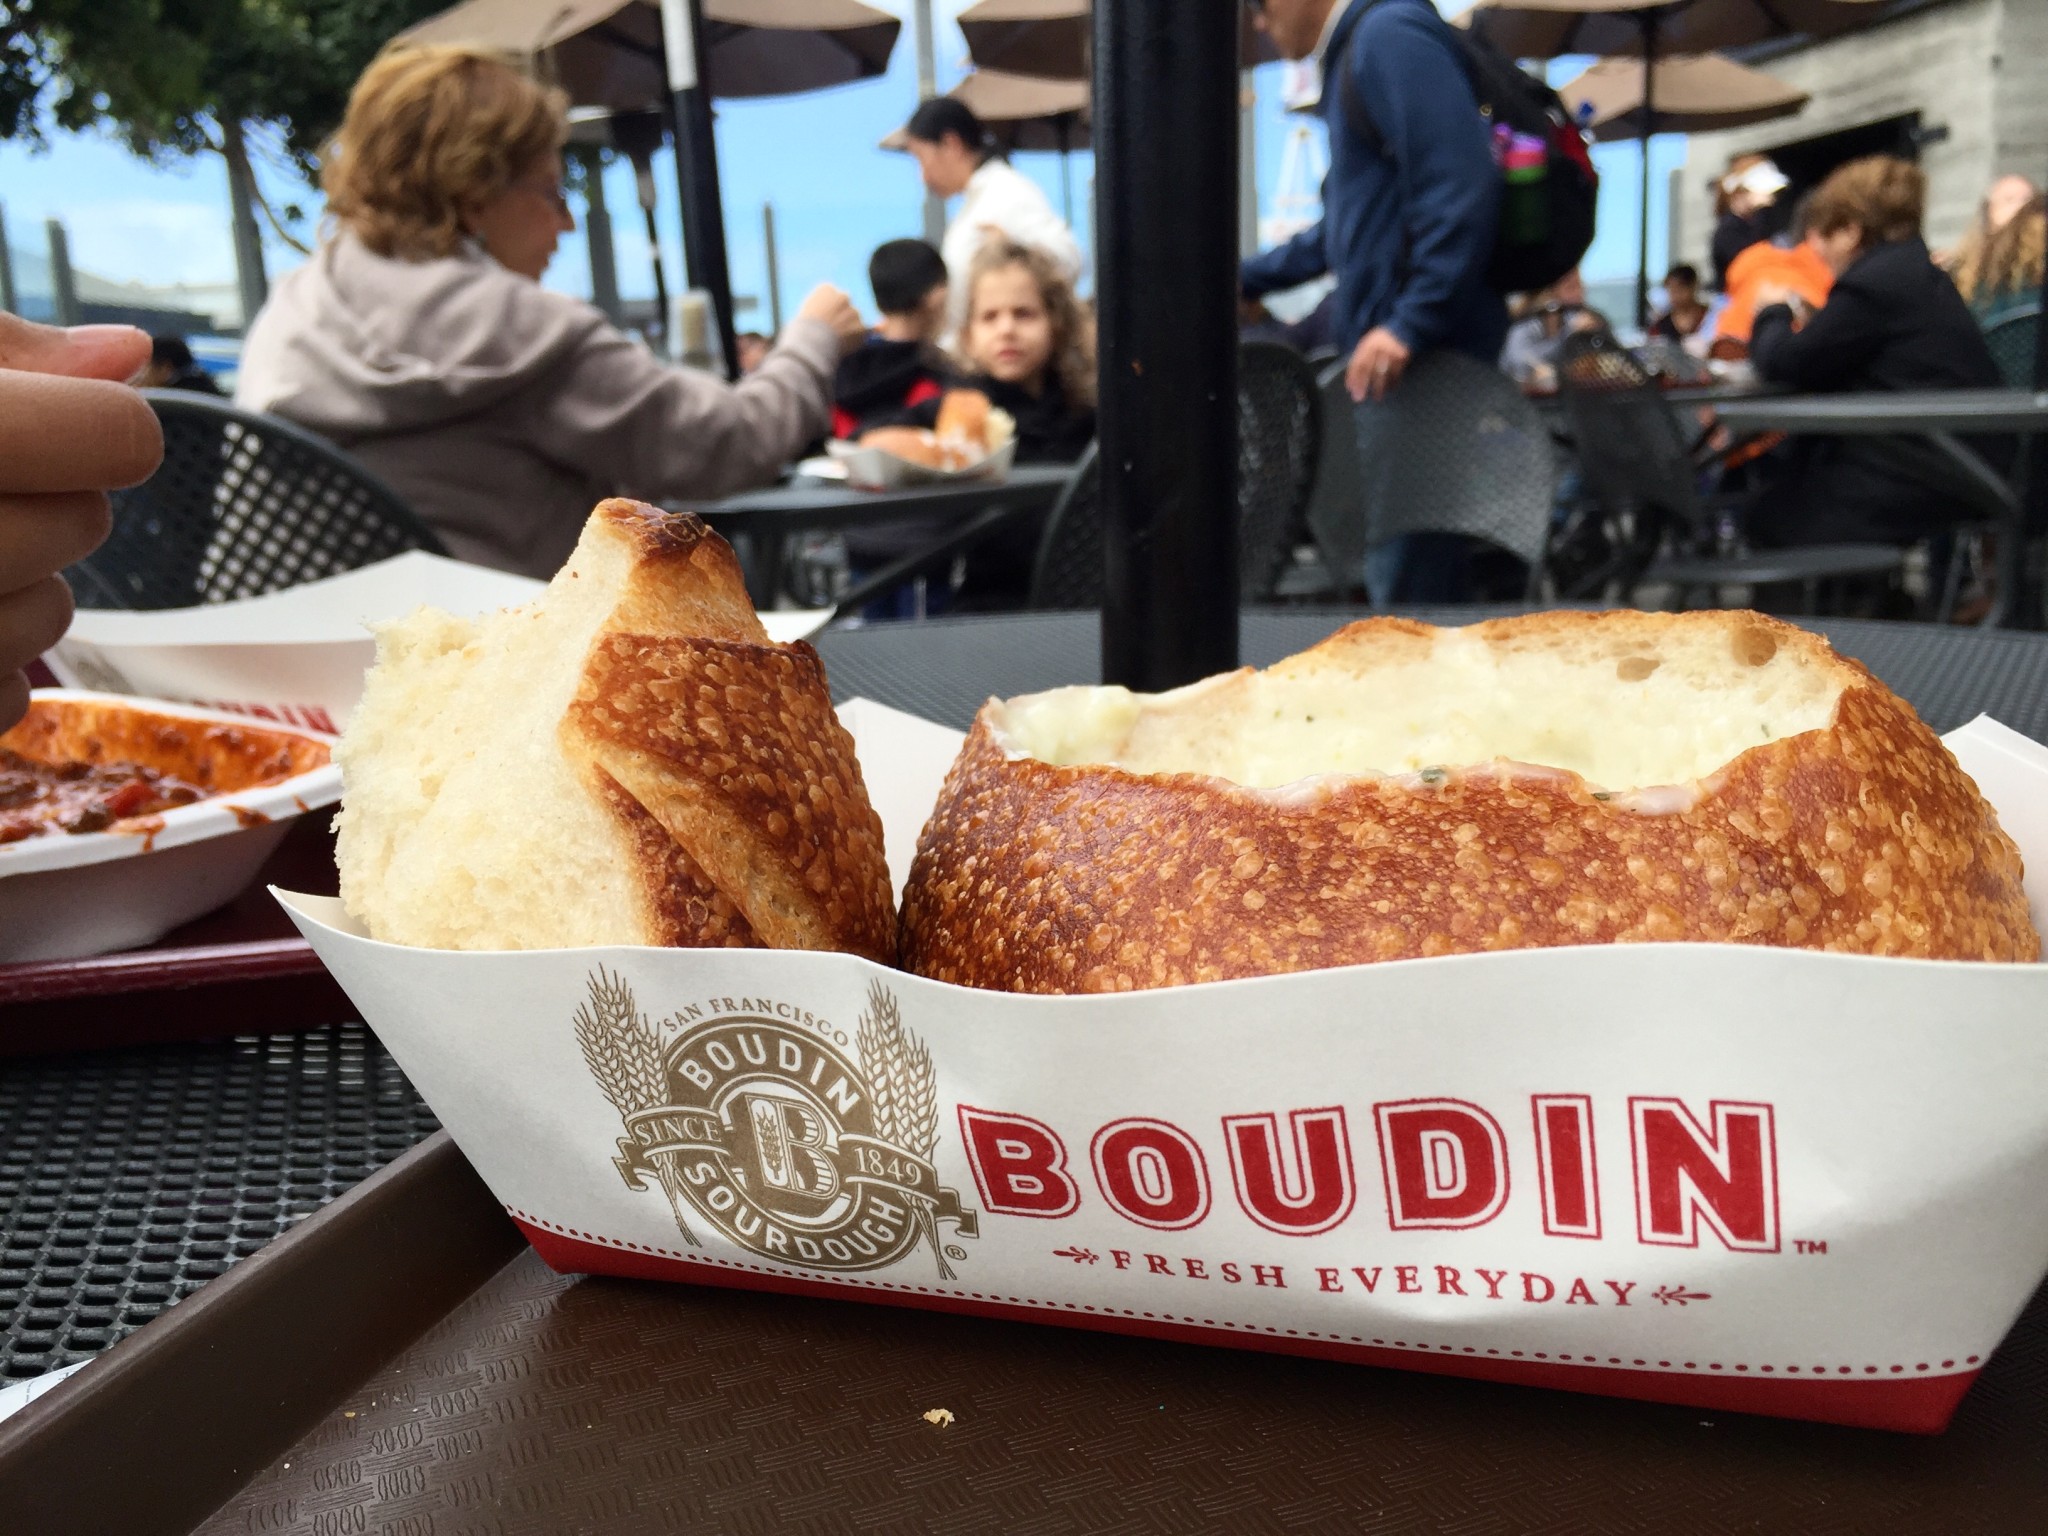 BOUDIN Bakery & Cafe: Home of the Original San Francisco Sourdough Bread